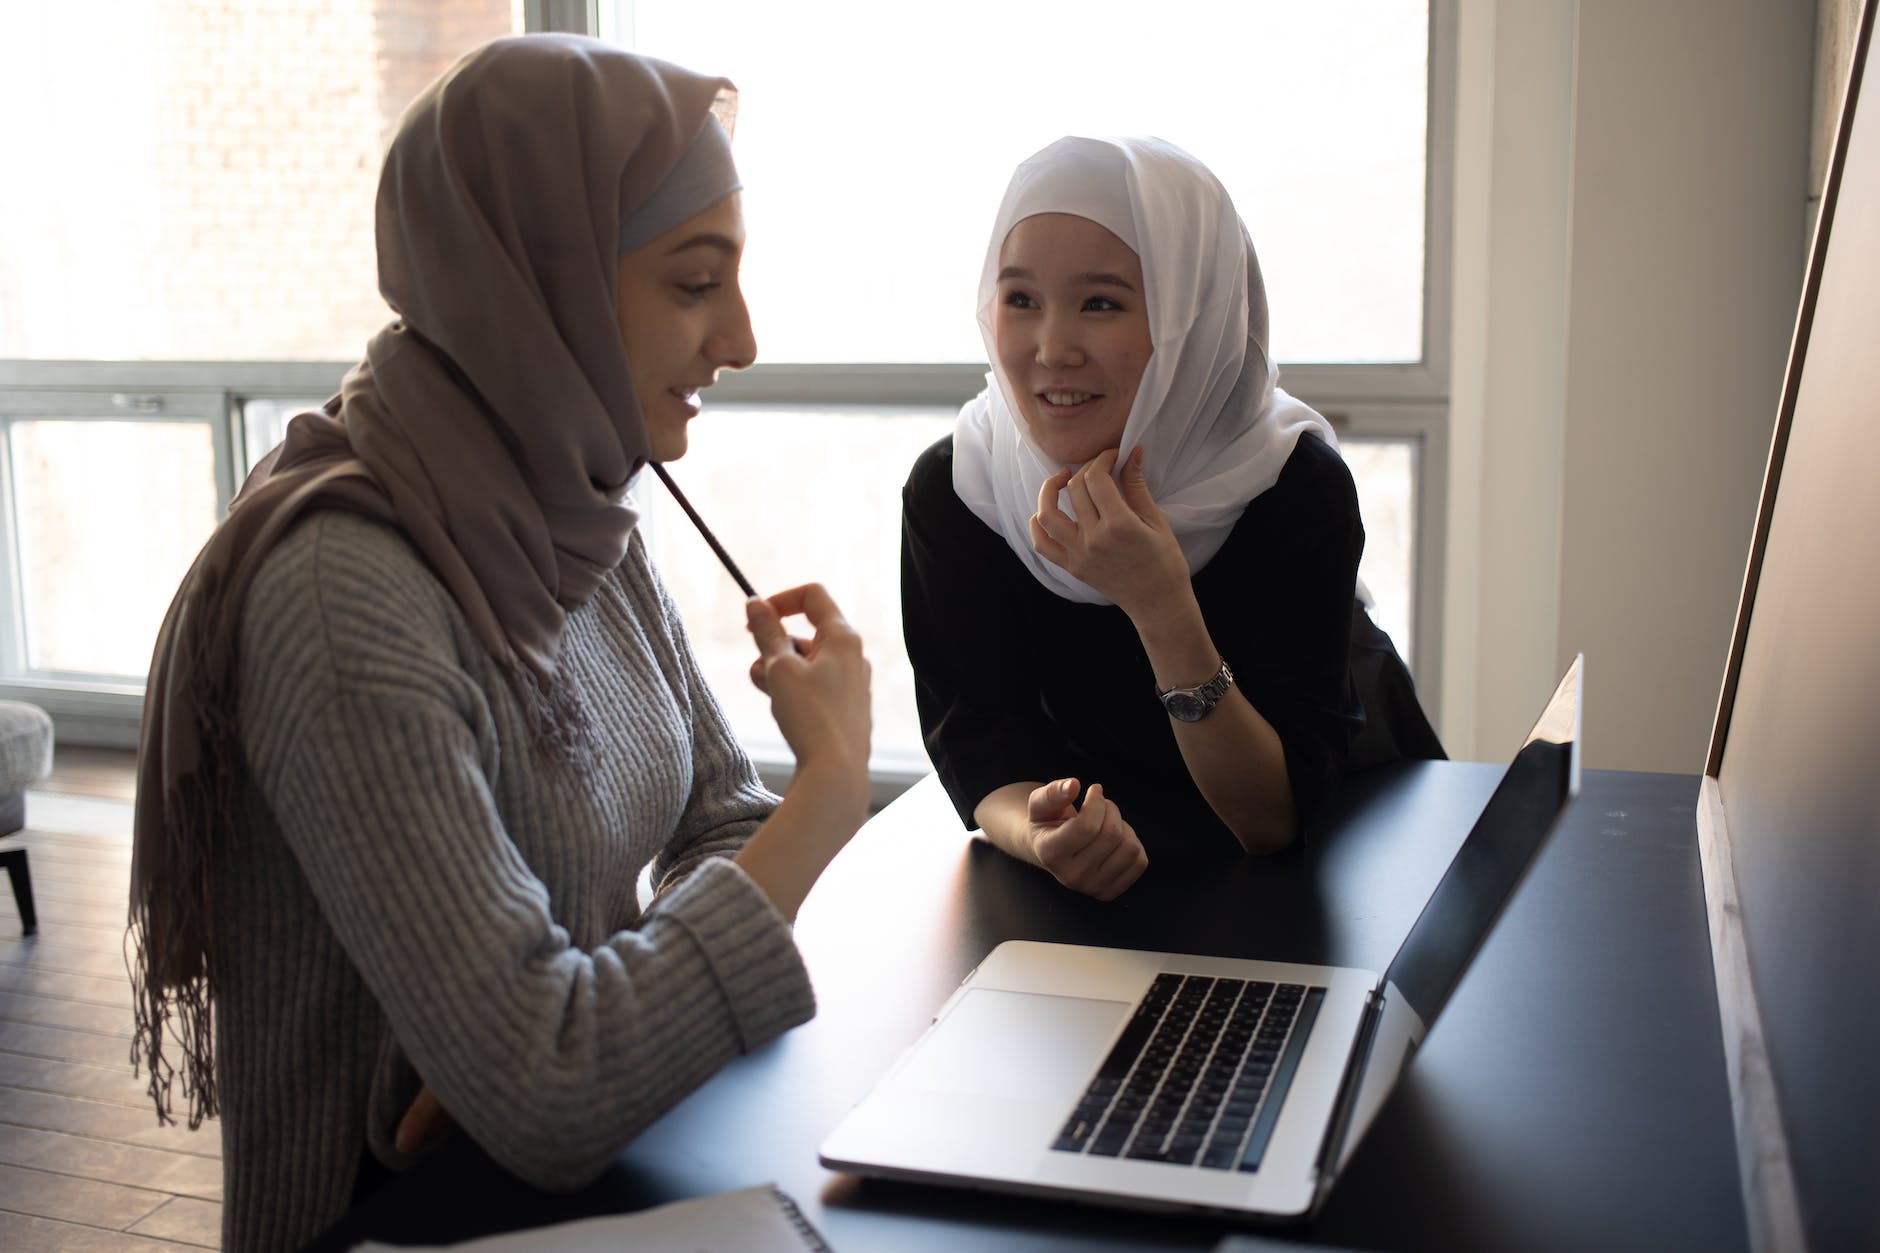 homeworksmontana. content multiracial women in hijabs browsing laptop in classroom